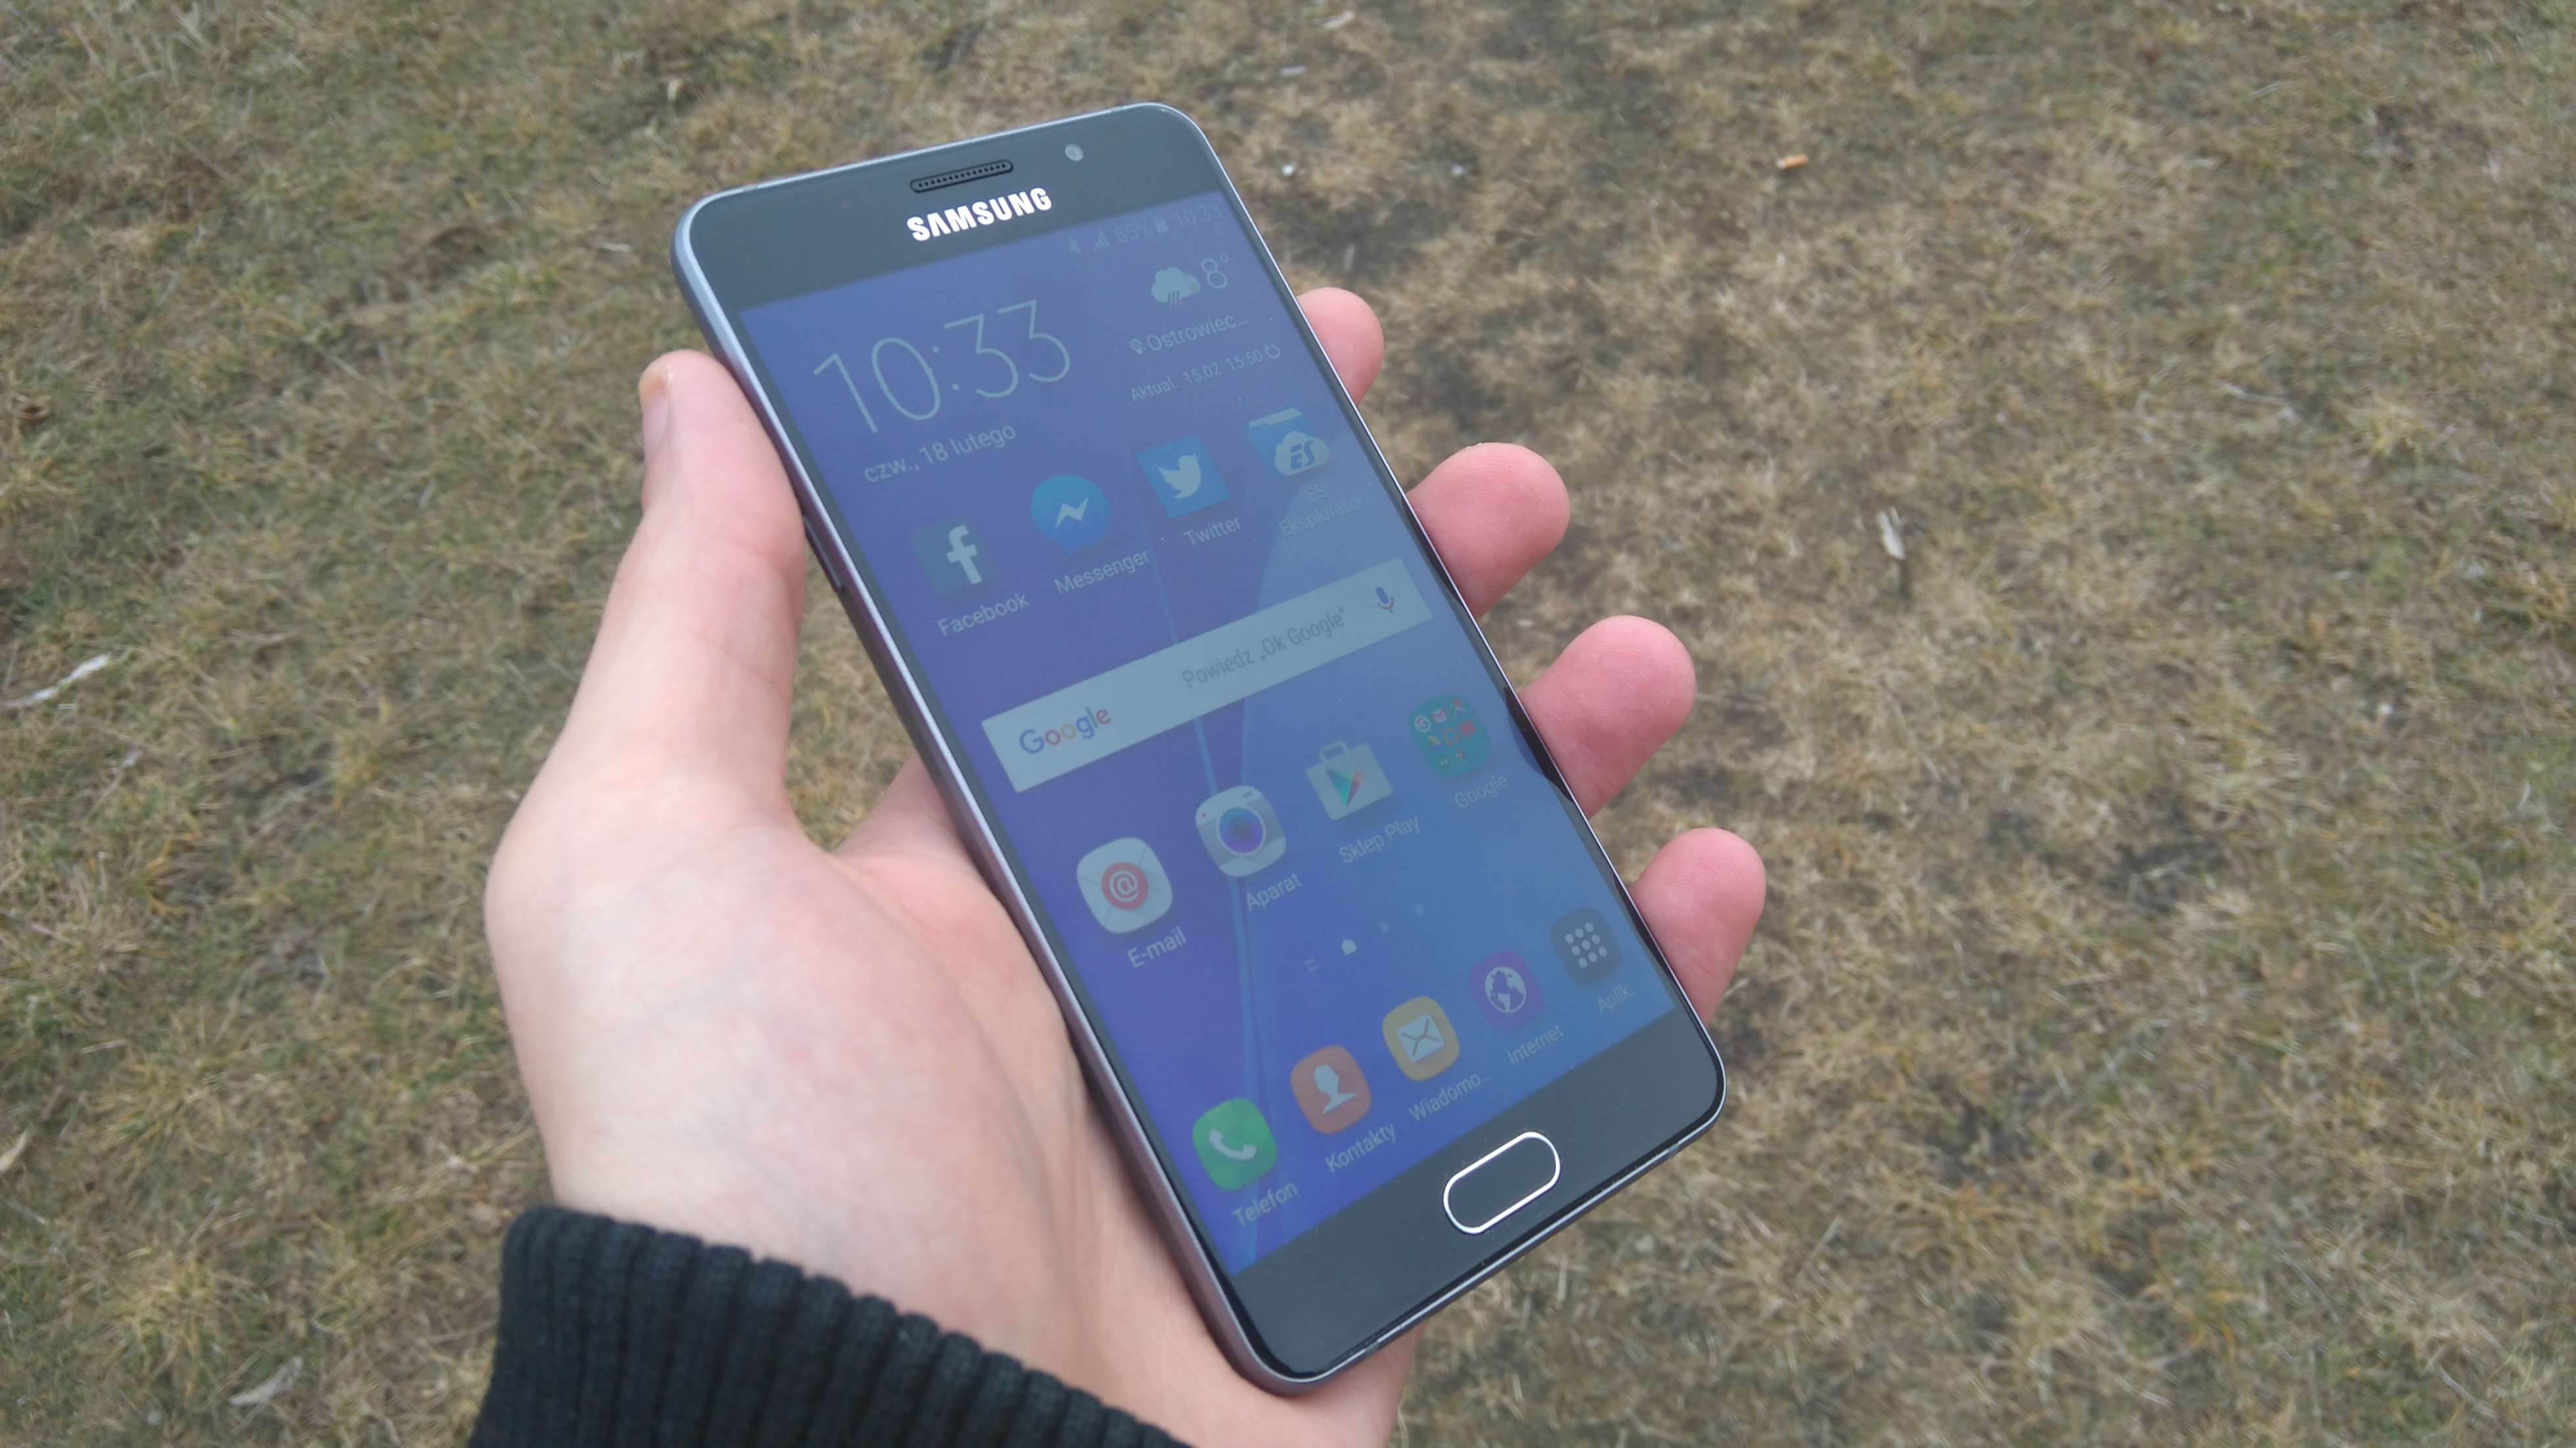 Samsung Galaxy A5 (2016) - recenzja urządzenia recenzje, polecane zalety, wady, Specyfikacja, Samsung Galaxy A5 2016, Samsung, recenzja Samsung Galaxy A5 (2016), Recenzja, polska recenzja, Opis, czy warto kupić Samsung Galaxy A5 (2016), cena, a5 z 2016, 2016  Samsung na nowo zapałał miłością do wysokiej jakości wykonania swoich mobilnych produktów, czego dowodem jest tegoroczna seria A. DSC 0005 1